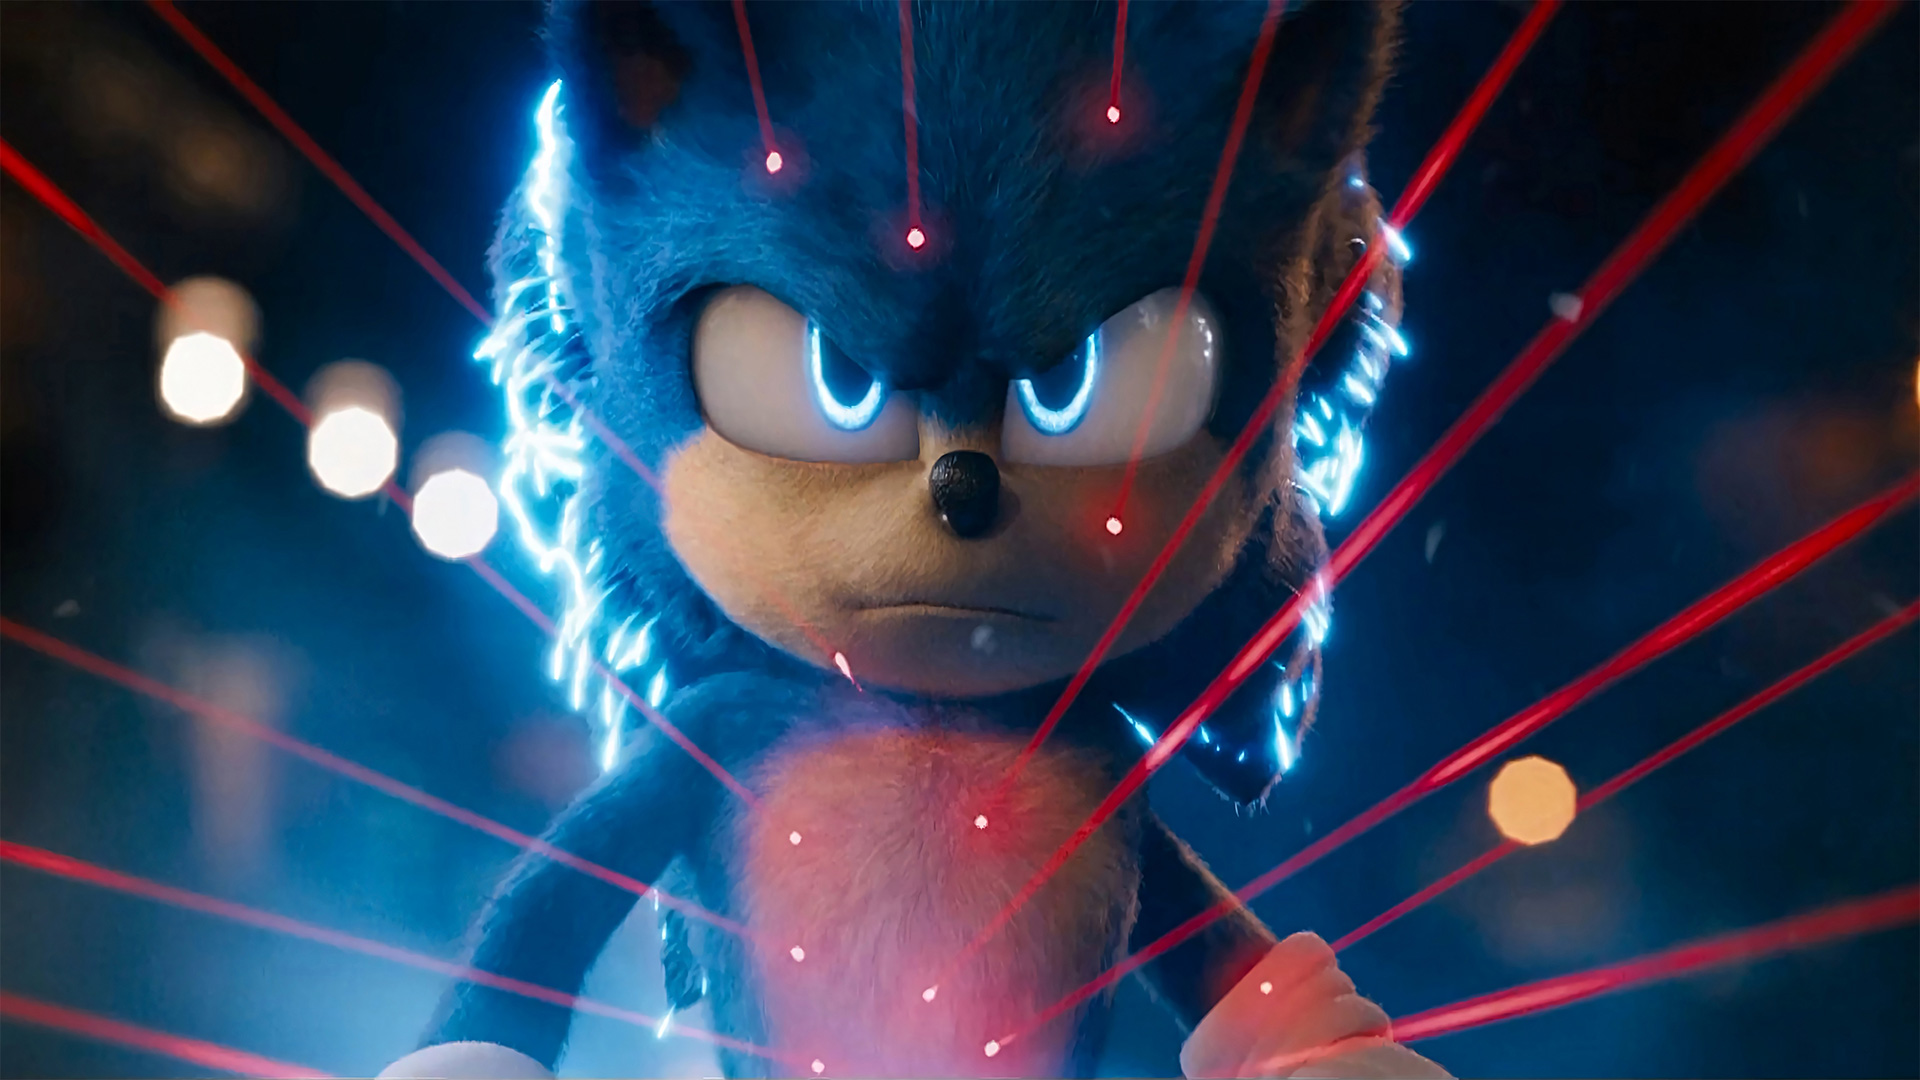 Sonic - O Filme' estreia na televisão portuguesa esta sexta-feira